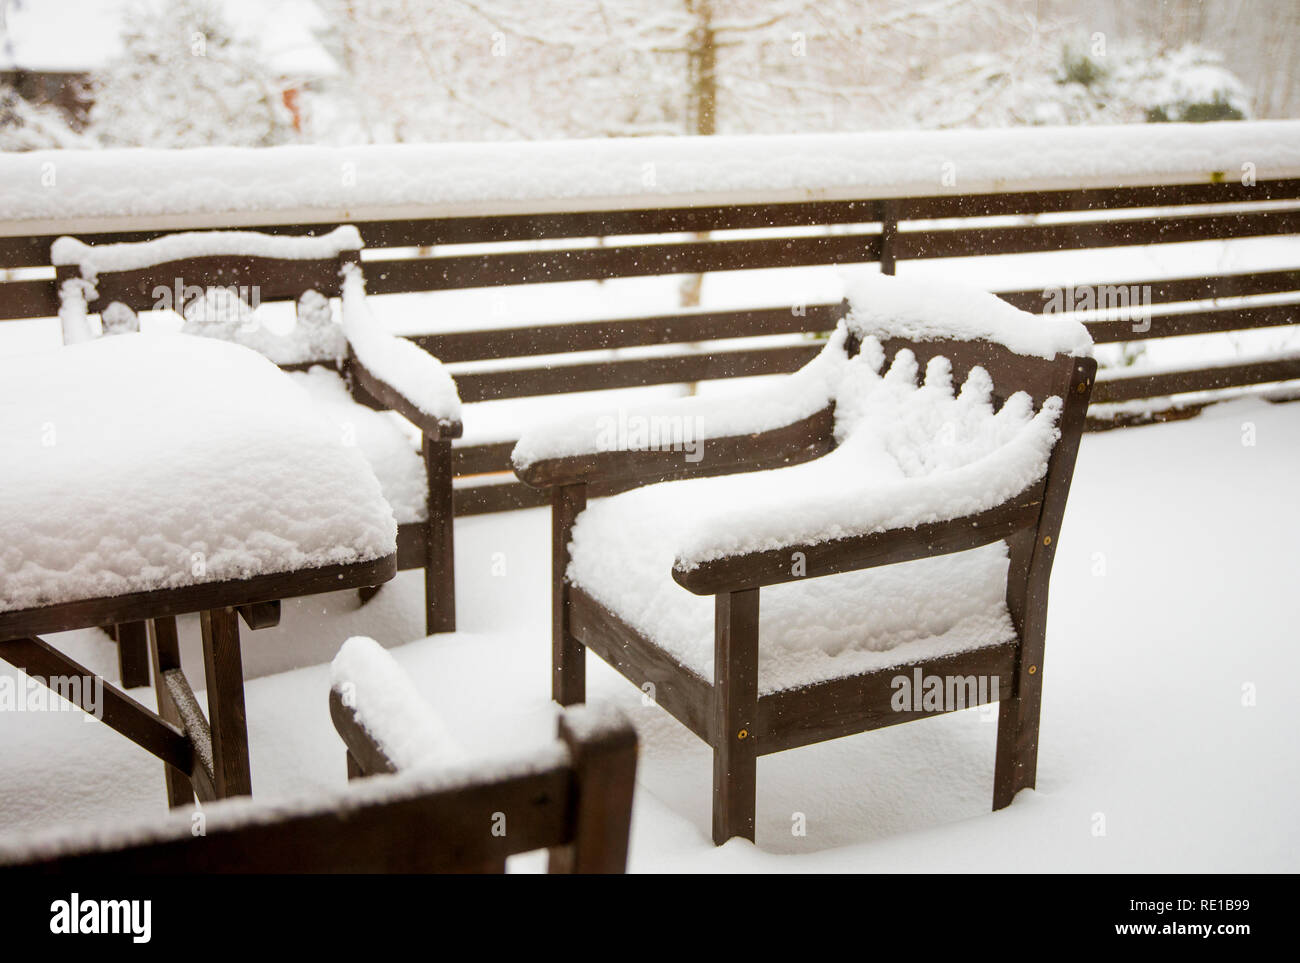 La neige propre frais couvrant en bois teinté brun acajou table et chaises de jardin sur balcon accueil. Meubles de jardin entretien après l'hiver froid Banque D'Images